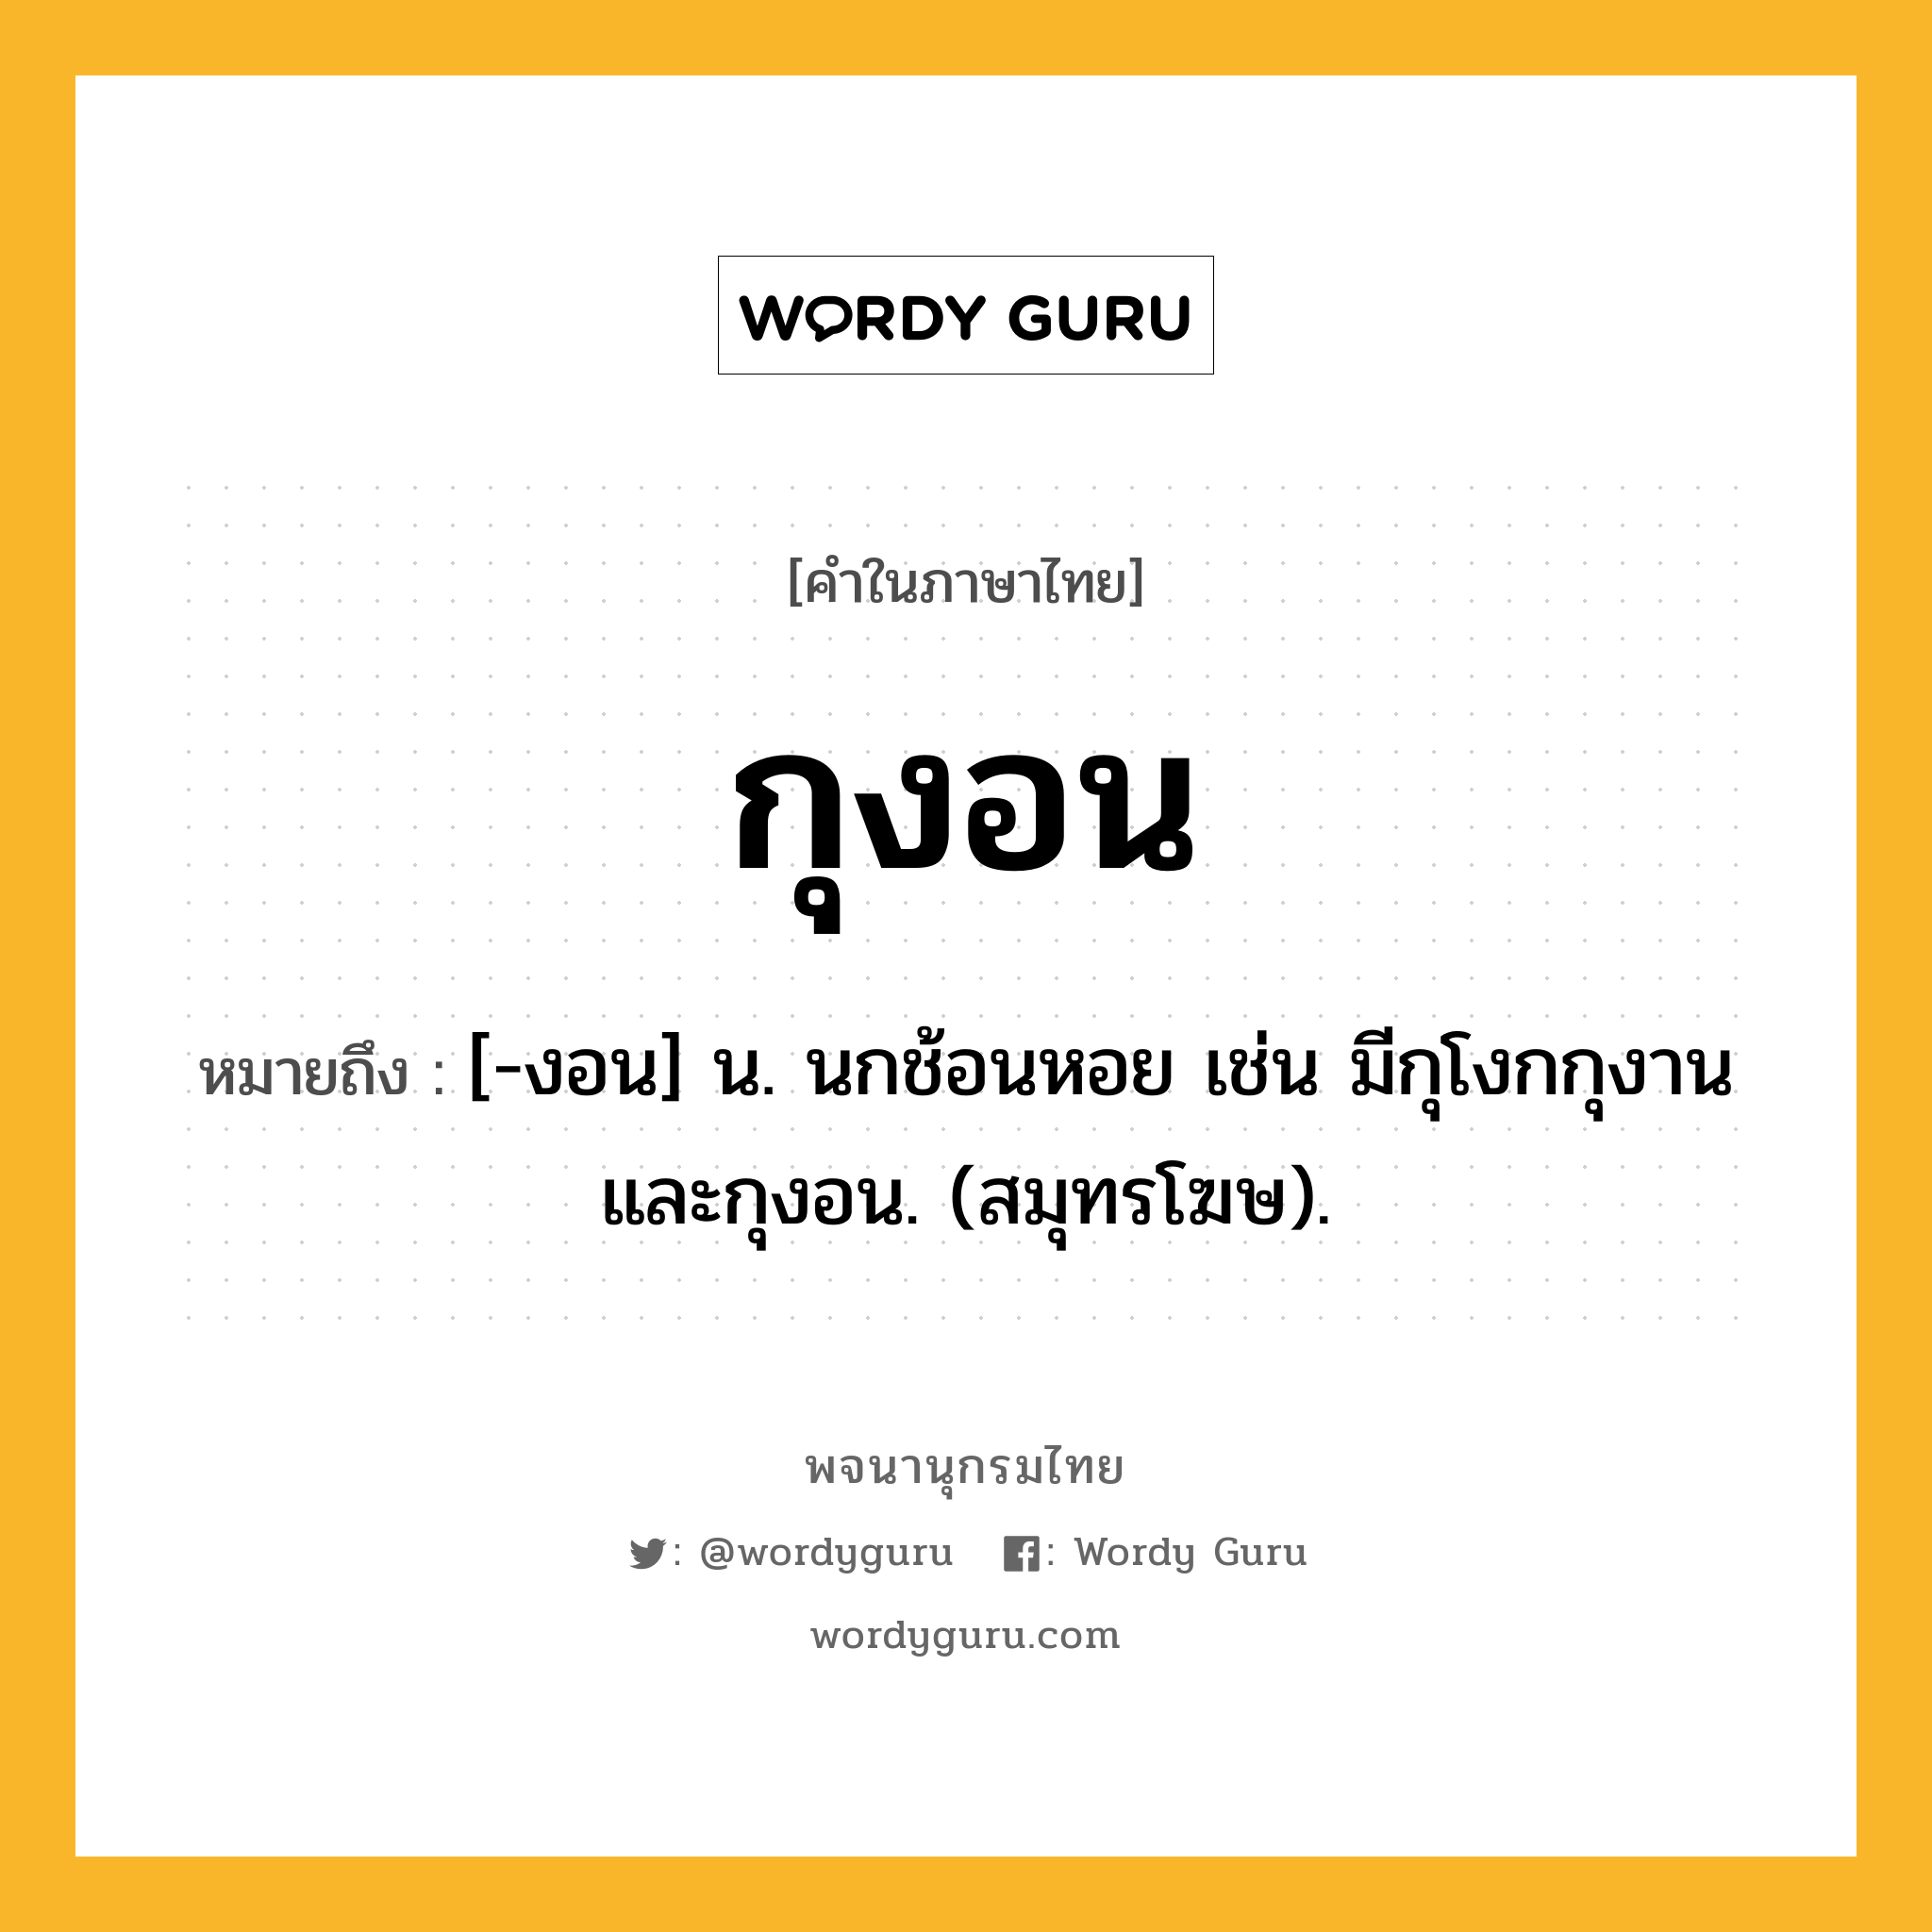 กุงอน หมายถึงอะไร?, คำในภาษาไทย กุงอน หมายถึง [-งอน] น. นกช้อนหอย เช่น มีกุโงกกุงานและกุงอน. (สมุทรโฆษ).